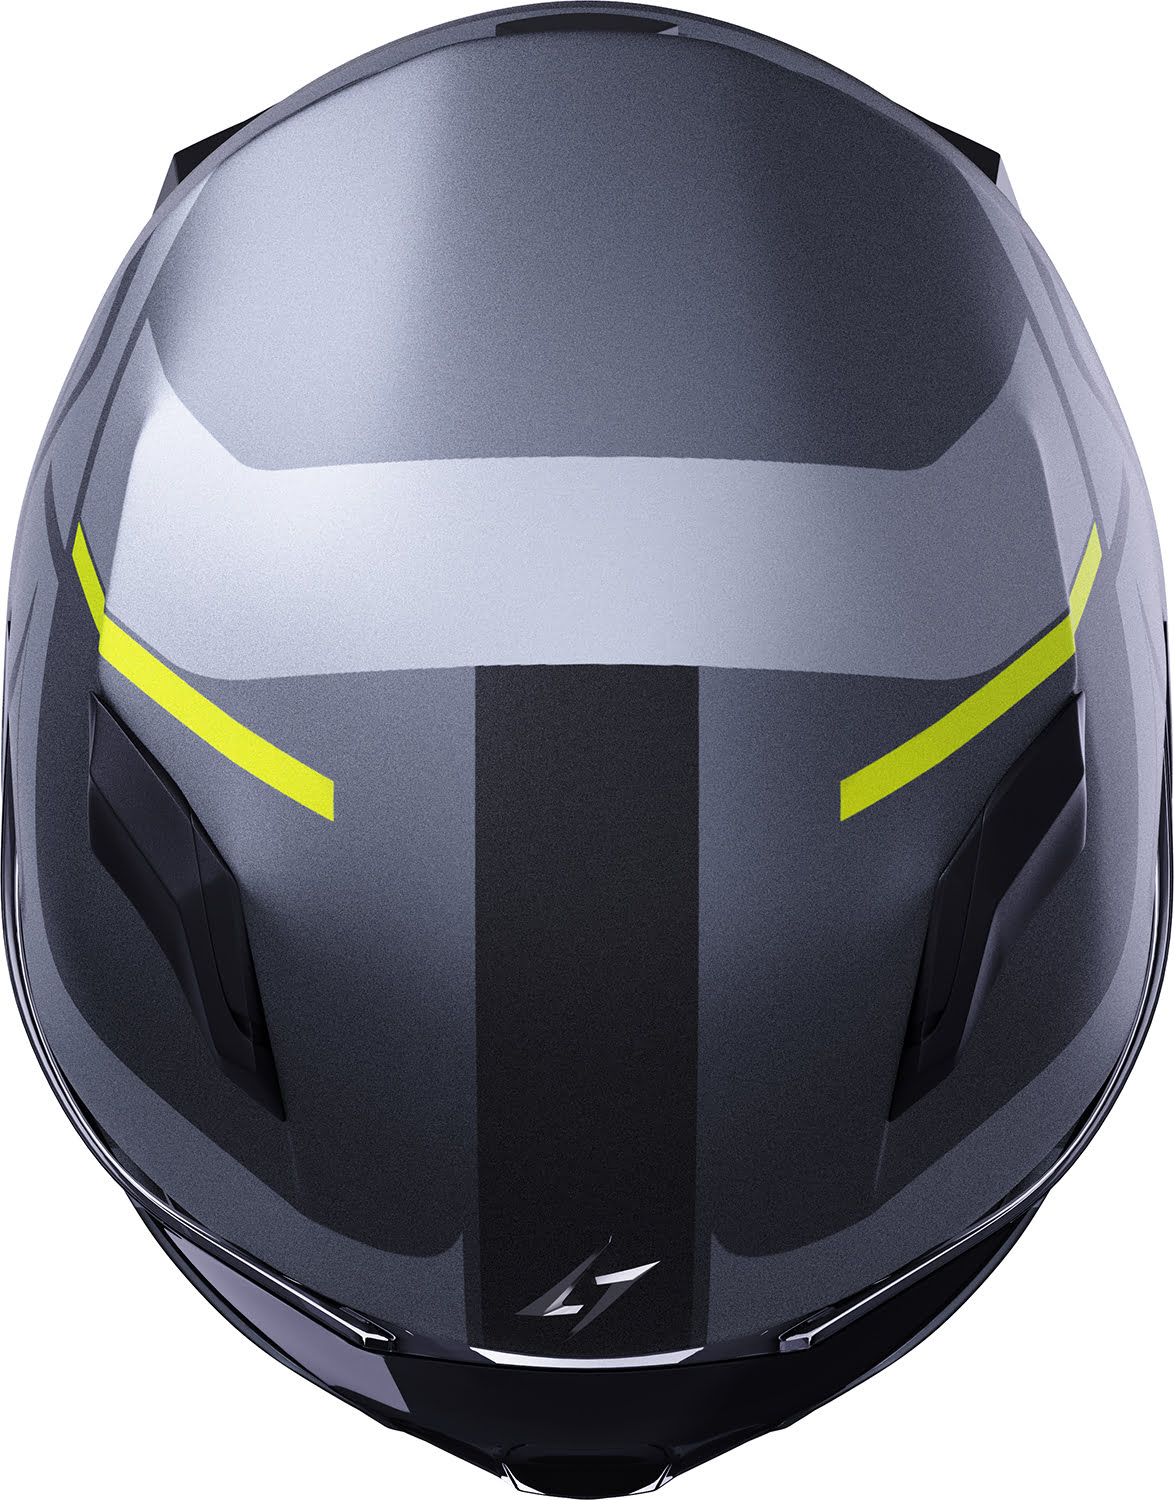 Helmet WISE RUNNER Grey / Neon Yellow Metal Matt STORMER 